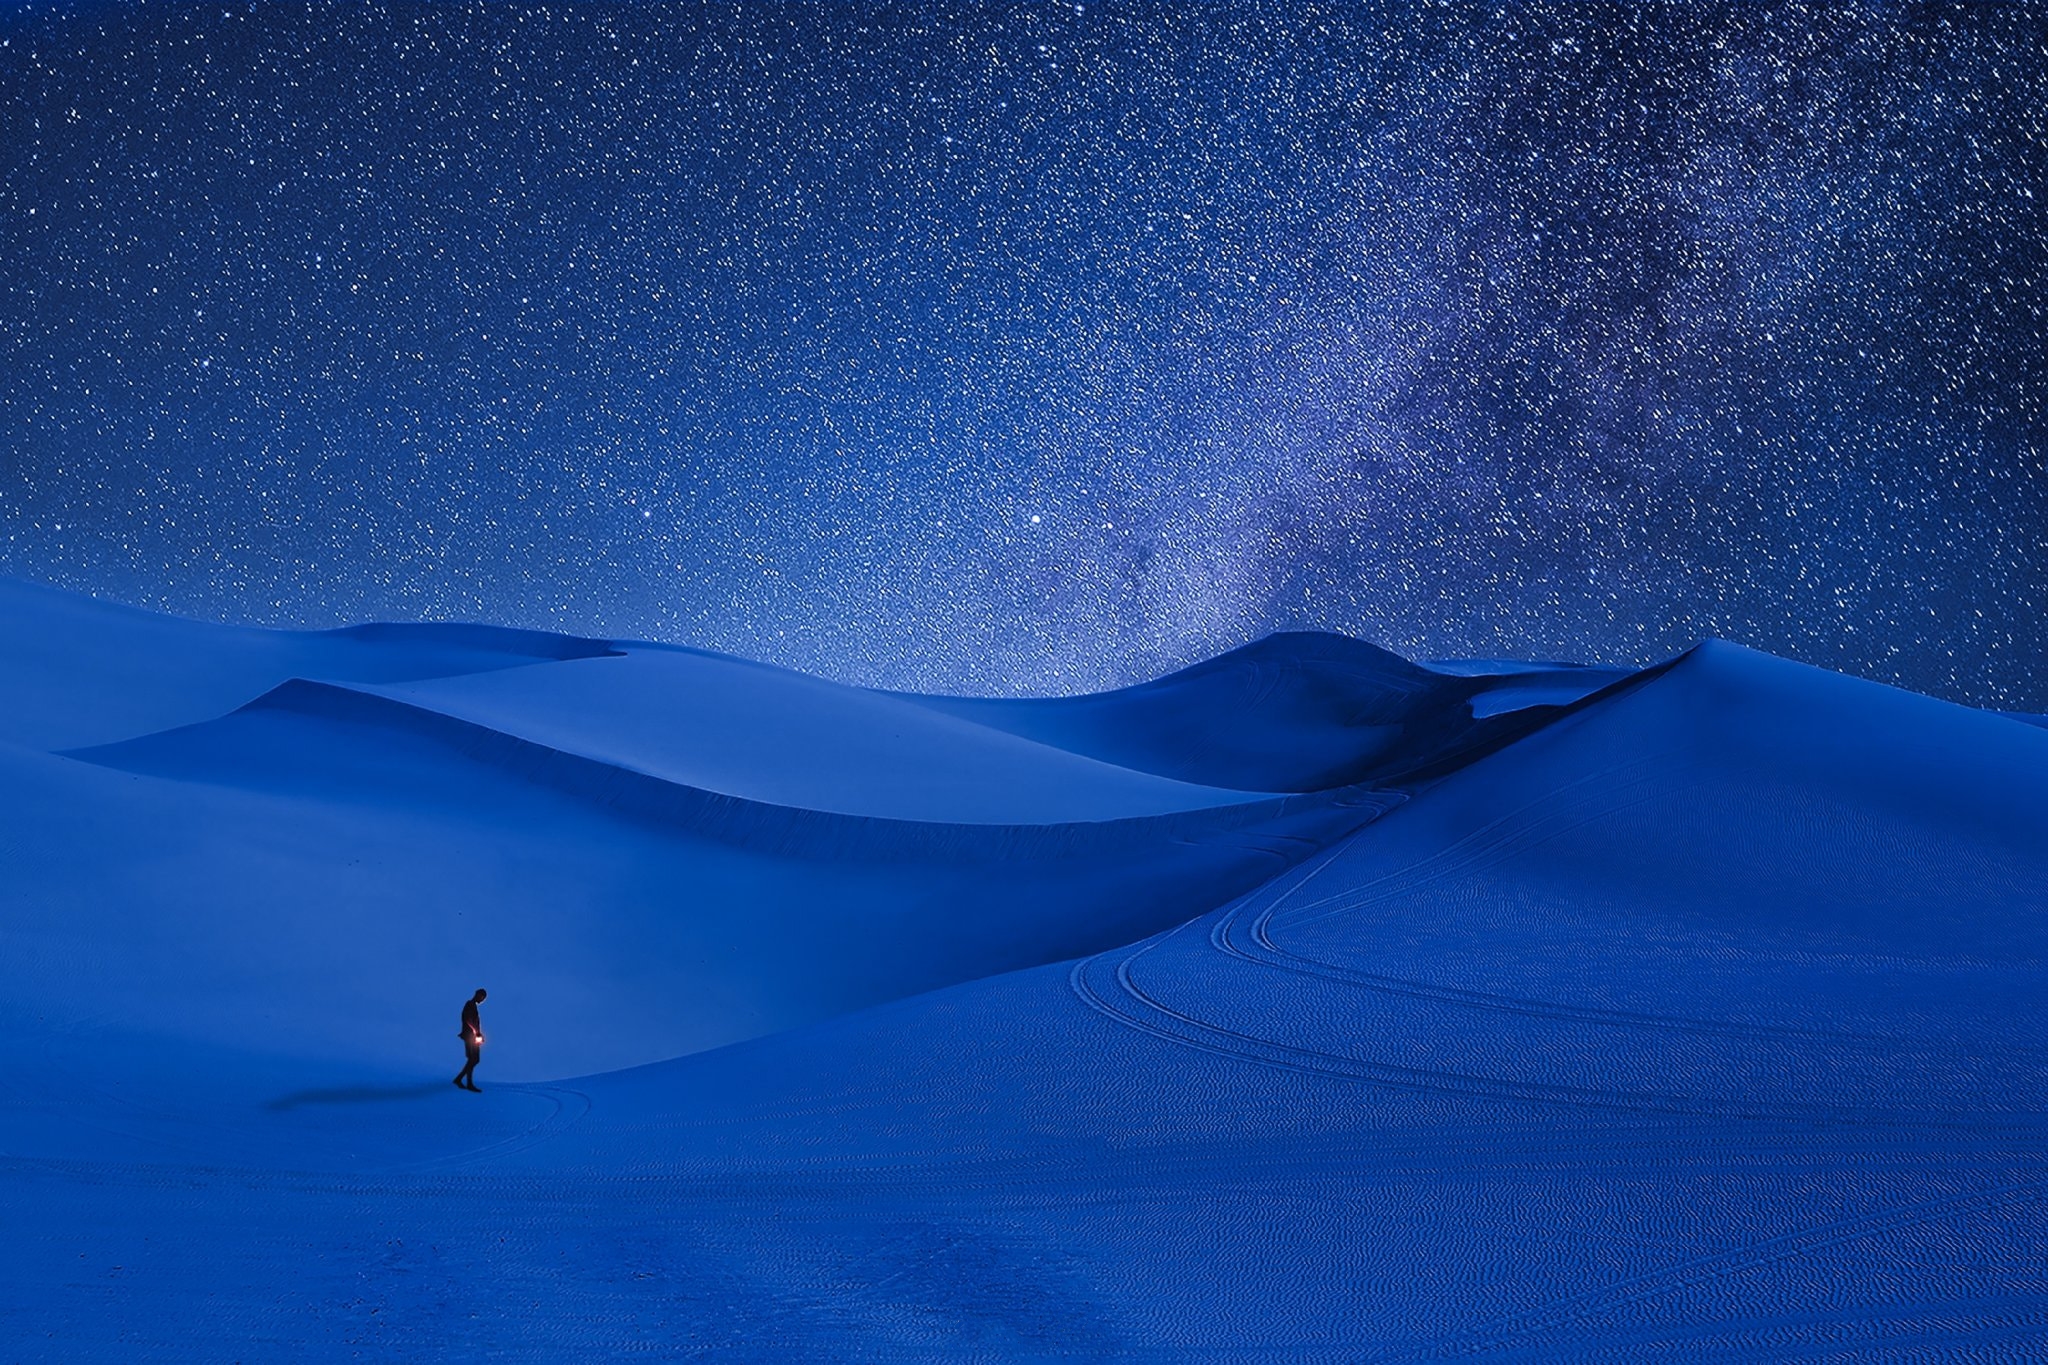 Wallpapers desert sand dune sky on the desktop